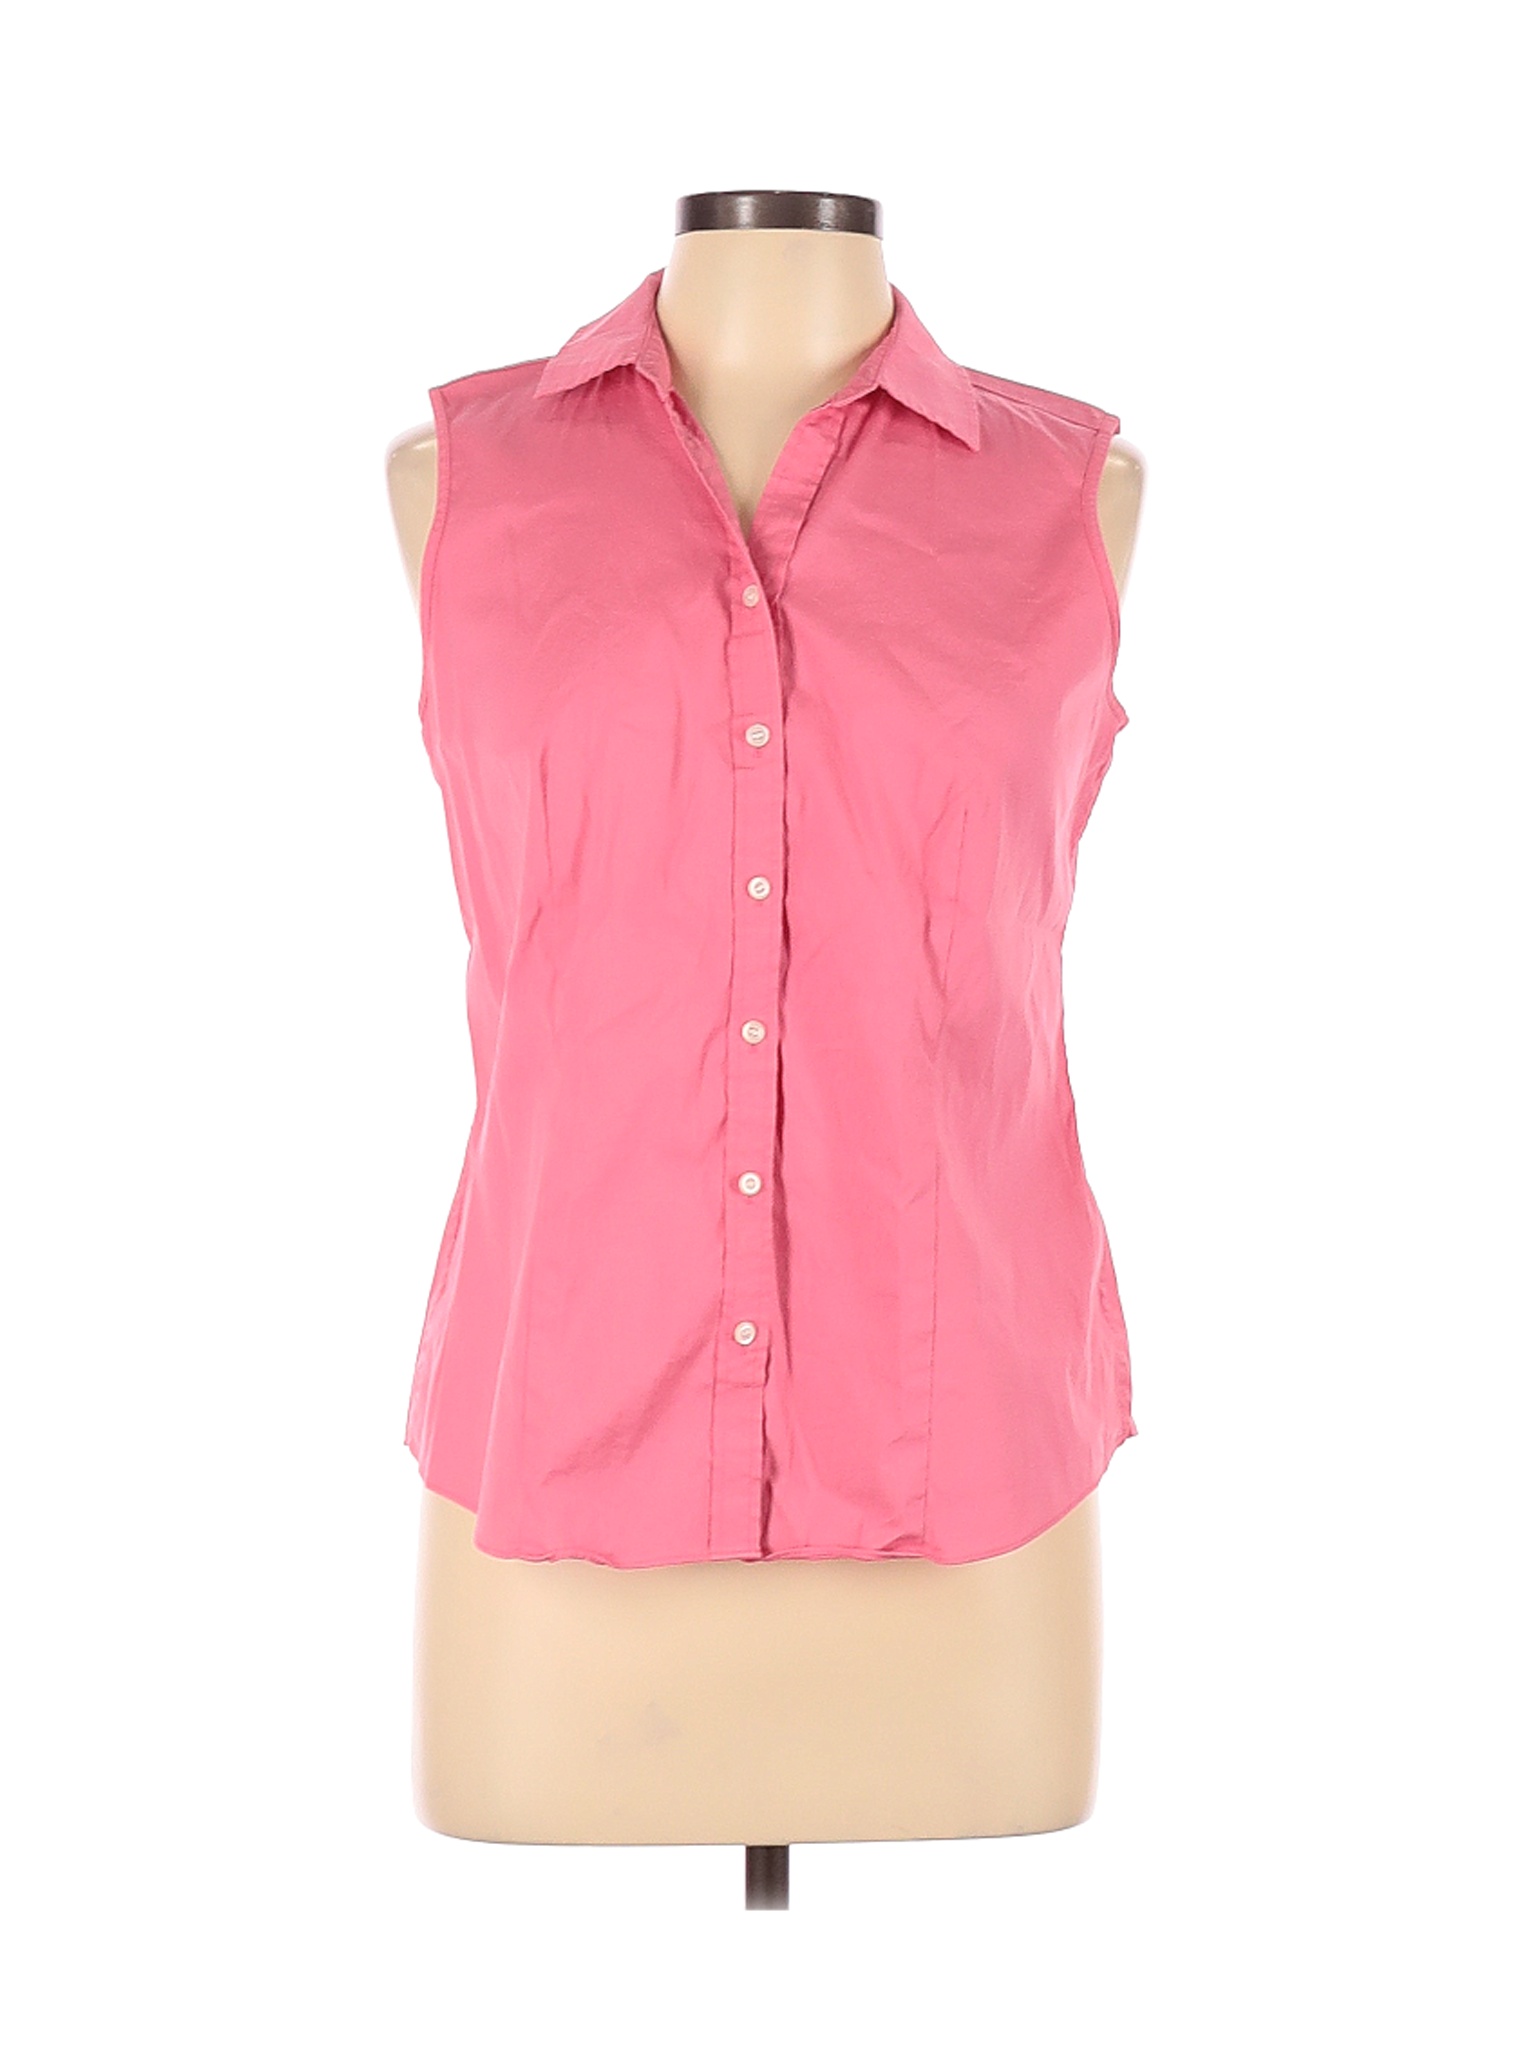 Charter Club Women Pink Sleeveless Button-Down Shirt 10 | eBay